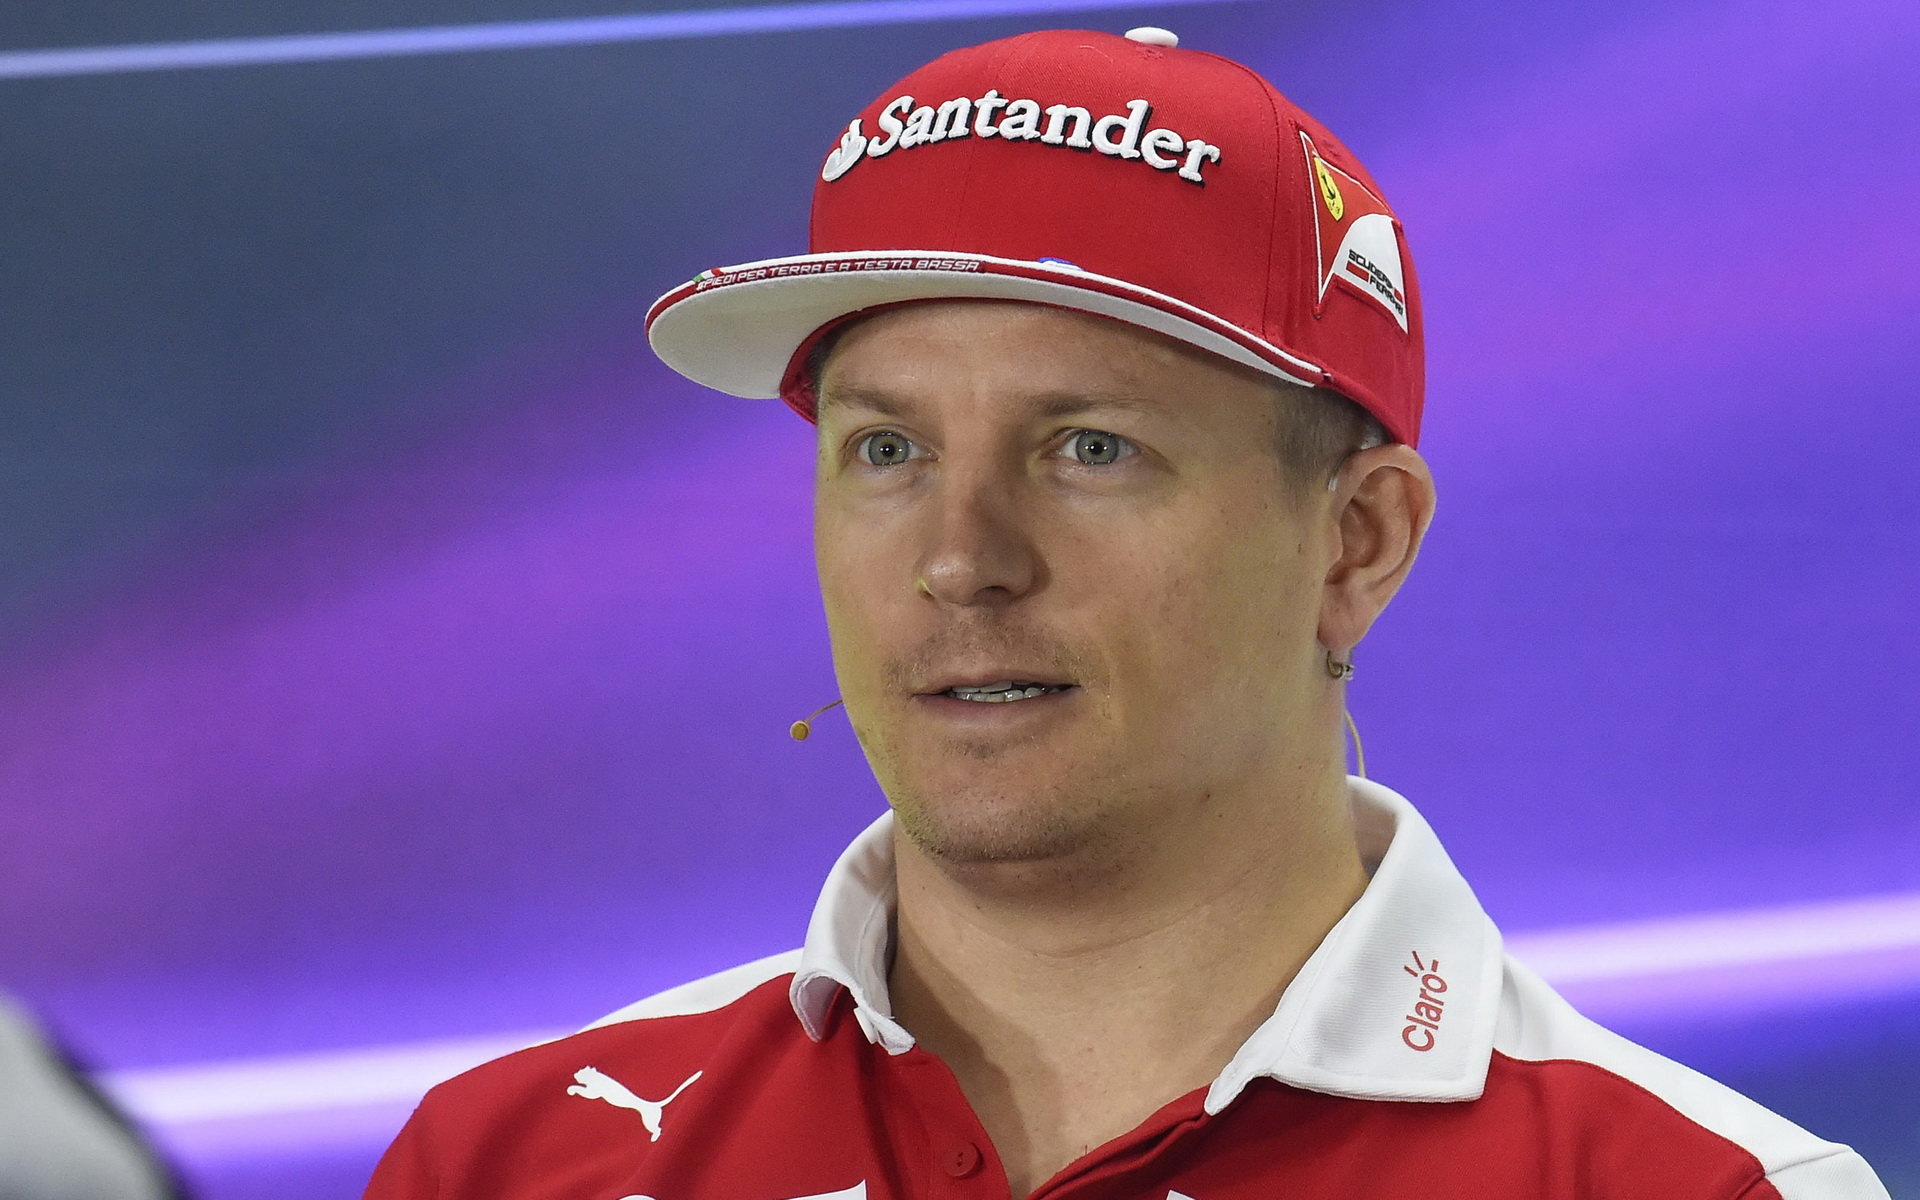 Kimi Räikkönen v Abú Zabí